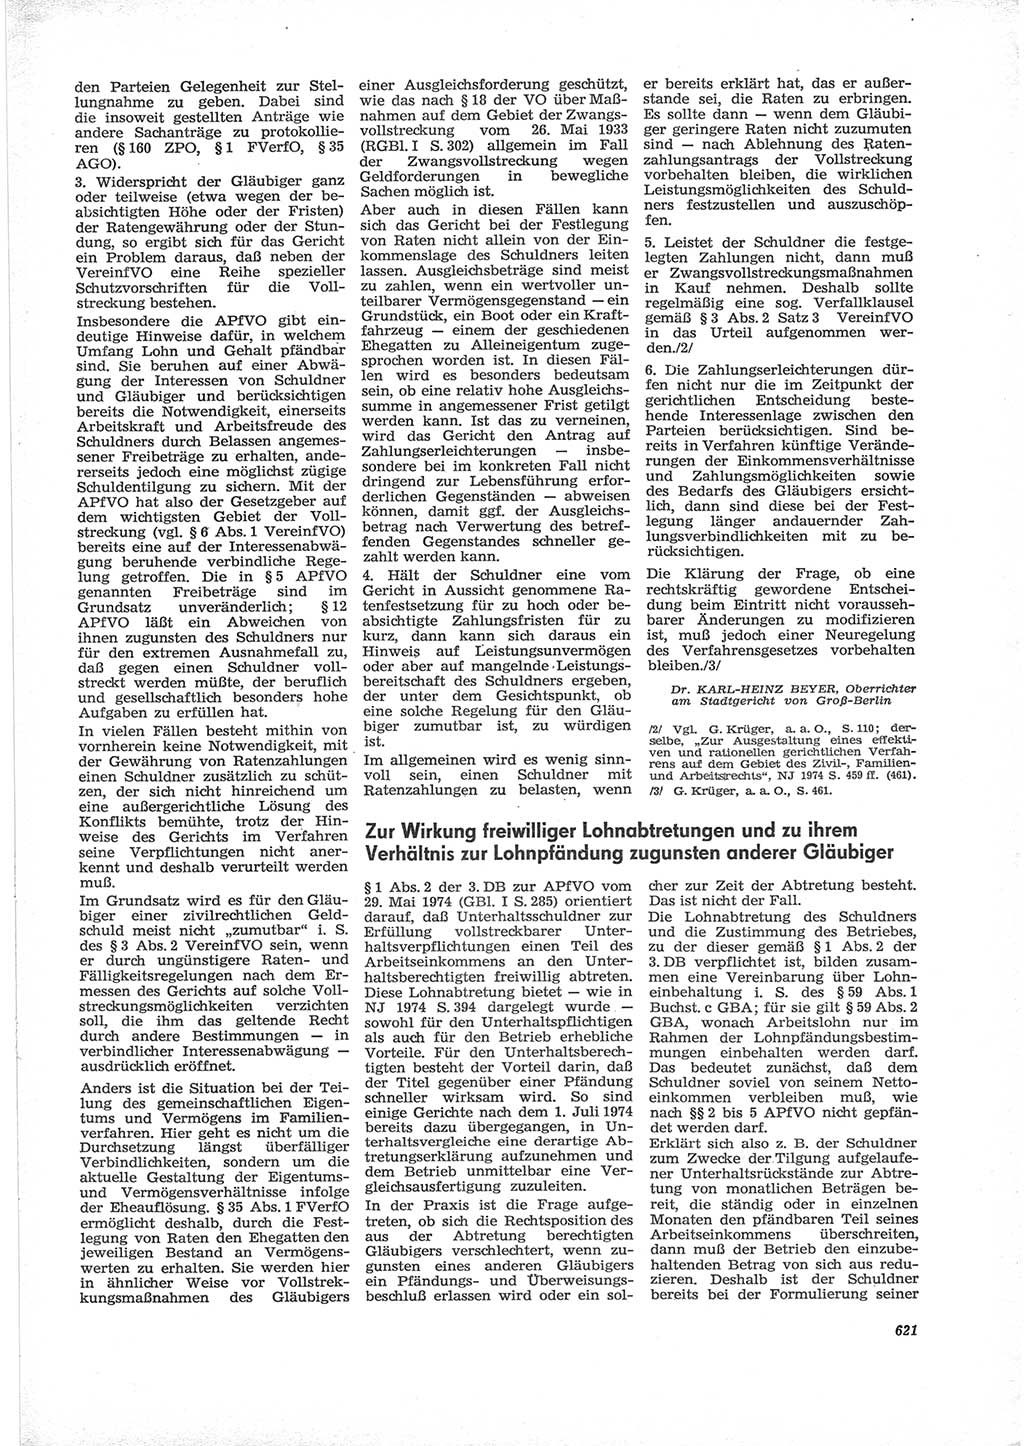 Neue Justiz (NJ), Zeitschrift für Recht und Rechtswissenschaft [Deutsche Demokratische Republik (DDR)], 28. Jahrgang 1974, Seite 621 (NJ DDR 1974, S. 621)